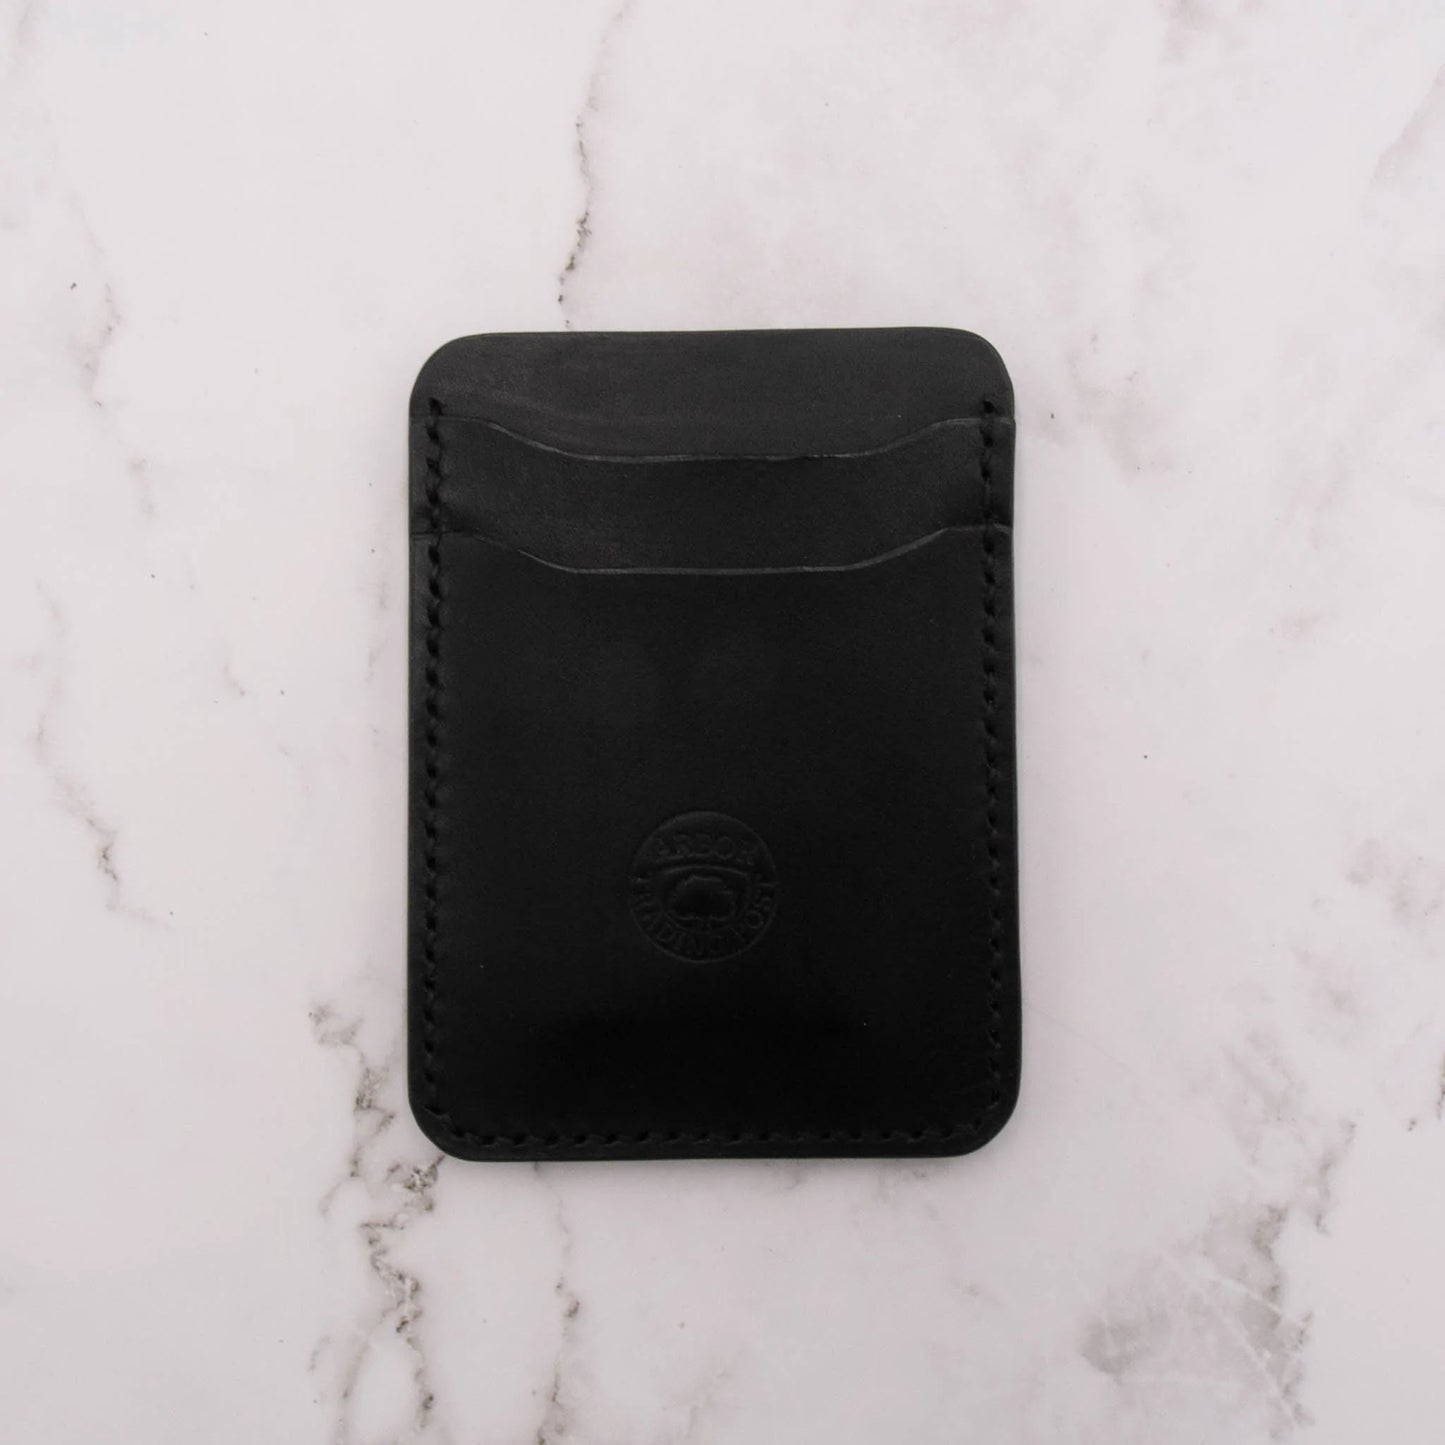 Cheekoo's Handcrafted Leather Card Holder Wallet, 5 Pocket Slim Design